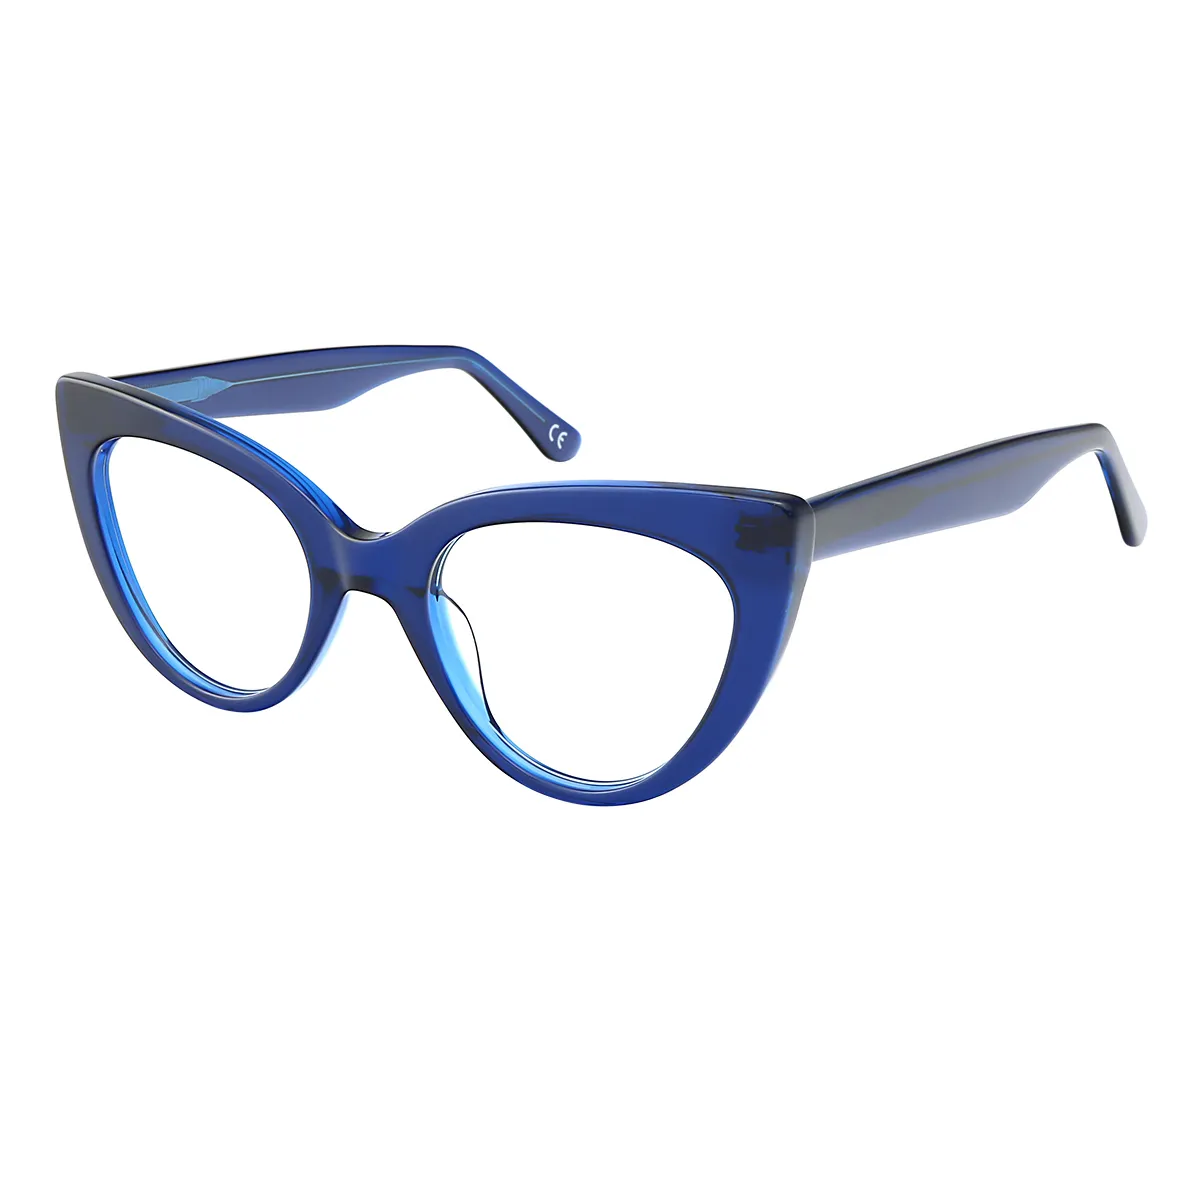 Hepburn - Cat-eye Blue Glasses for Women - EFE